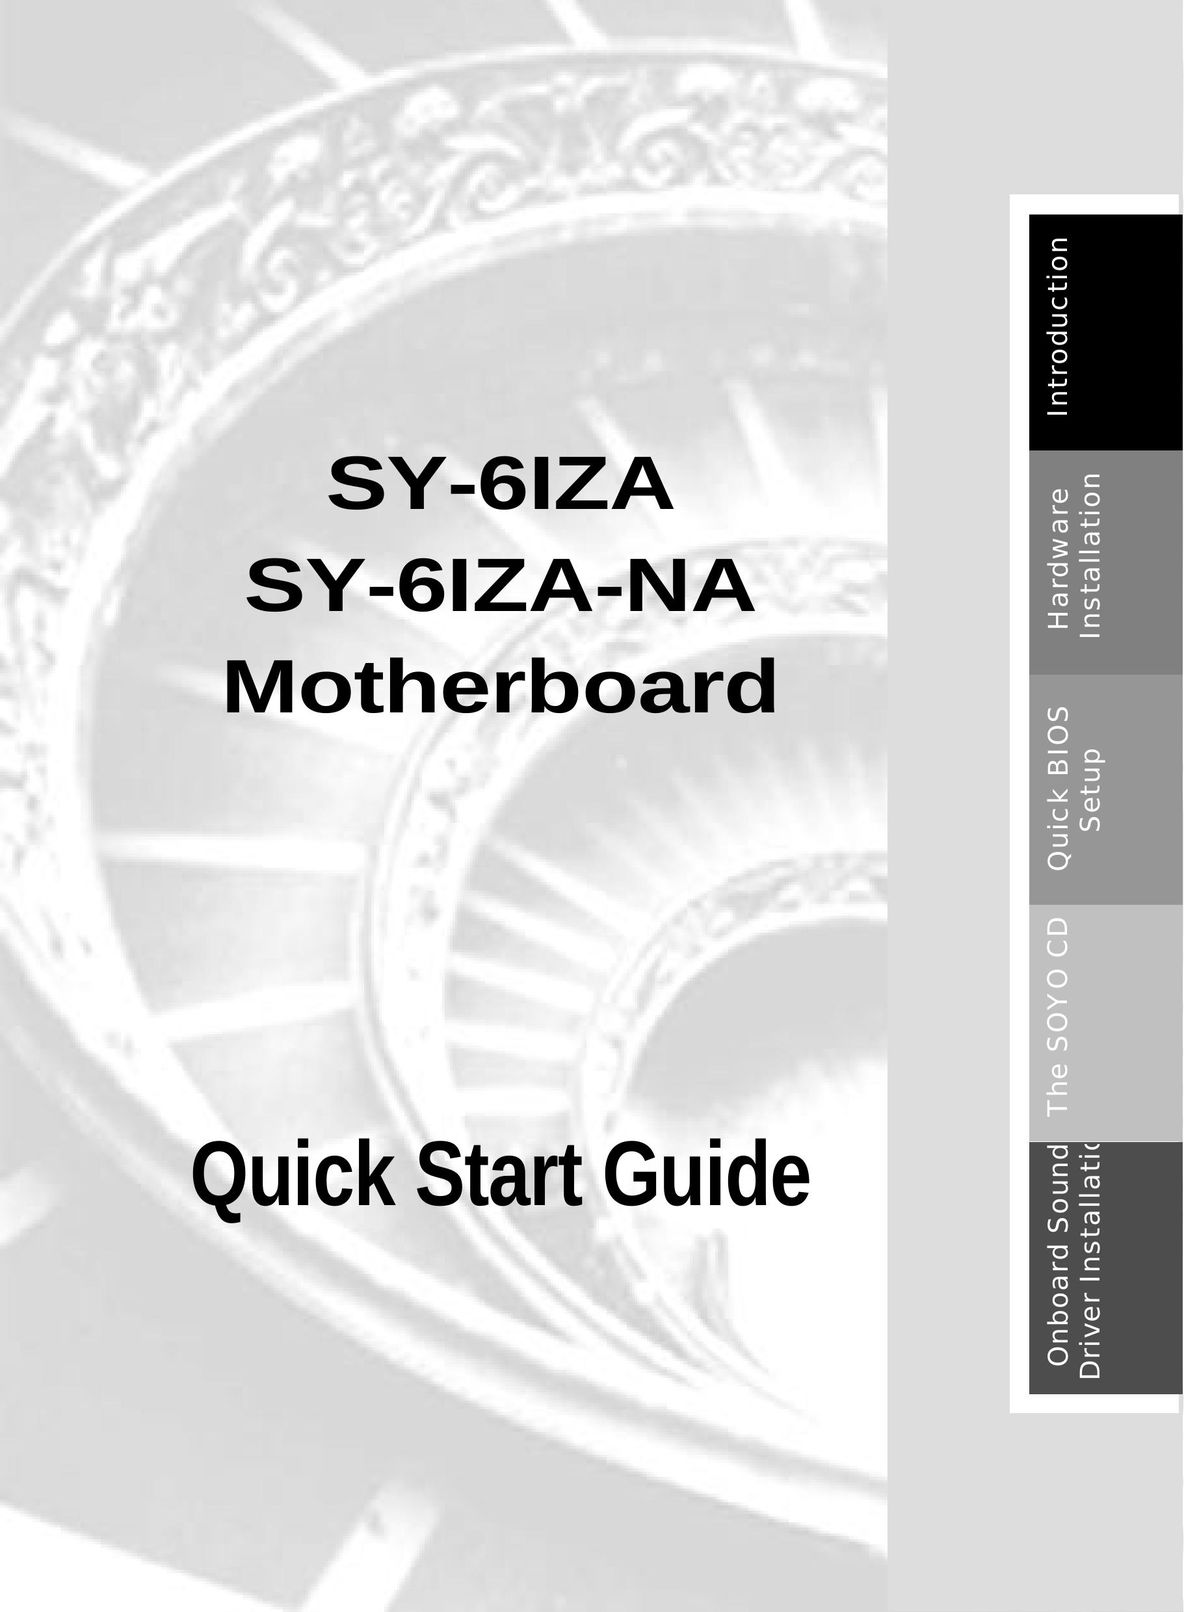 SOYO SY-6IZA Computer Hardware User Manual